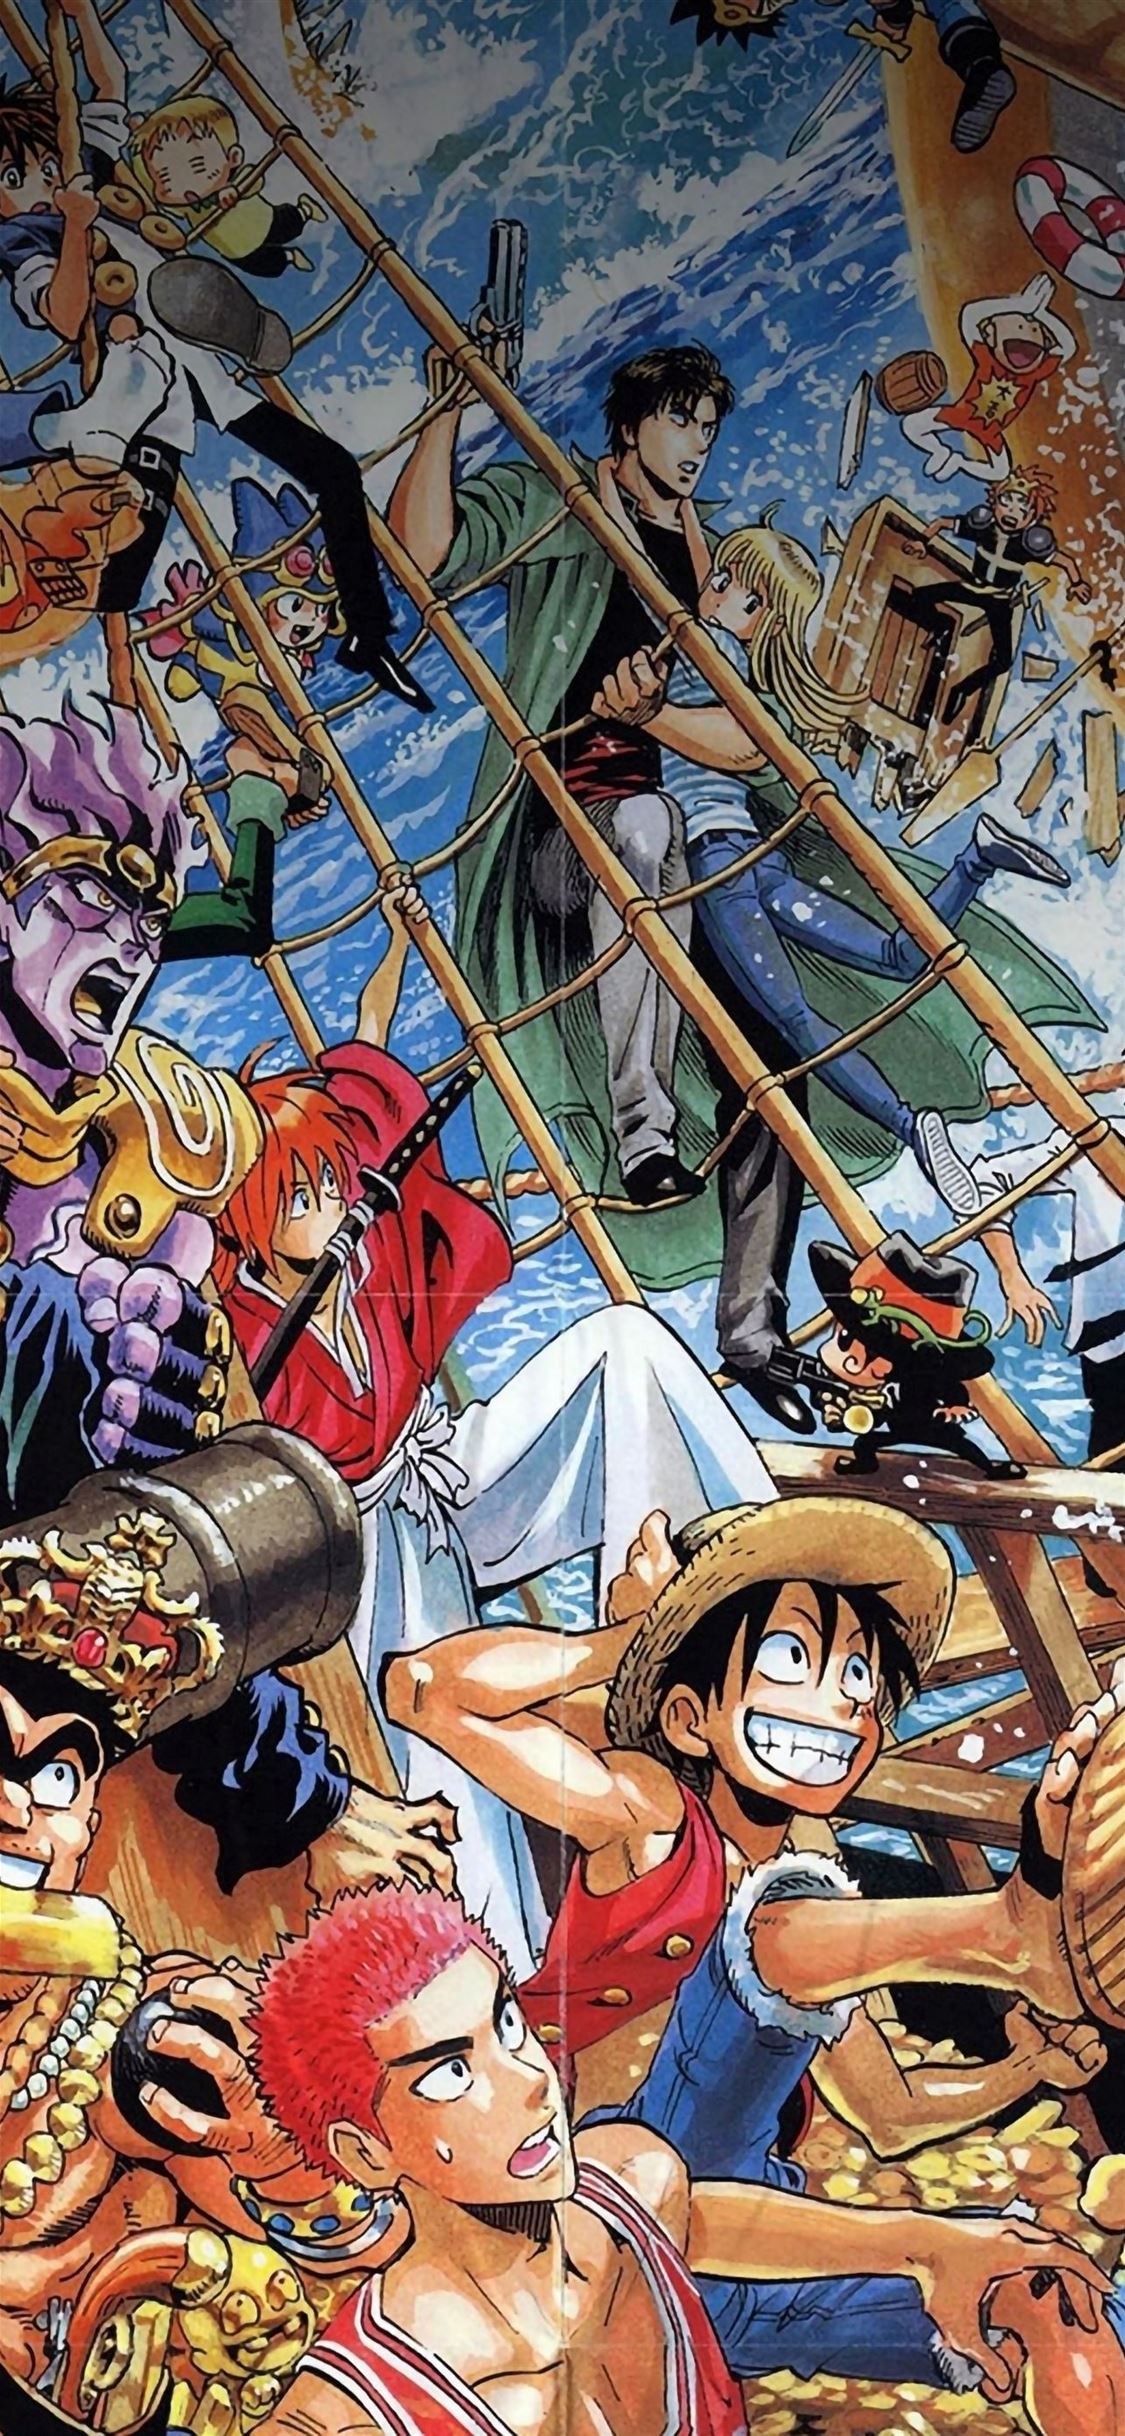 Hãy cho phép mình được đắm mình trong những bức tranh truyện tranh đẹp mắt nhất với One Piece Comics Illust iPhone. Hình ảnh sẽ đưa bạn đến với thế giới hải tặc sống động và đầy tính thử thách. 